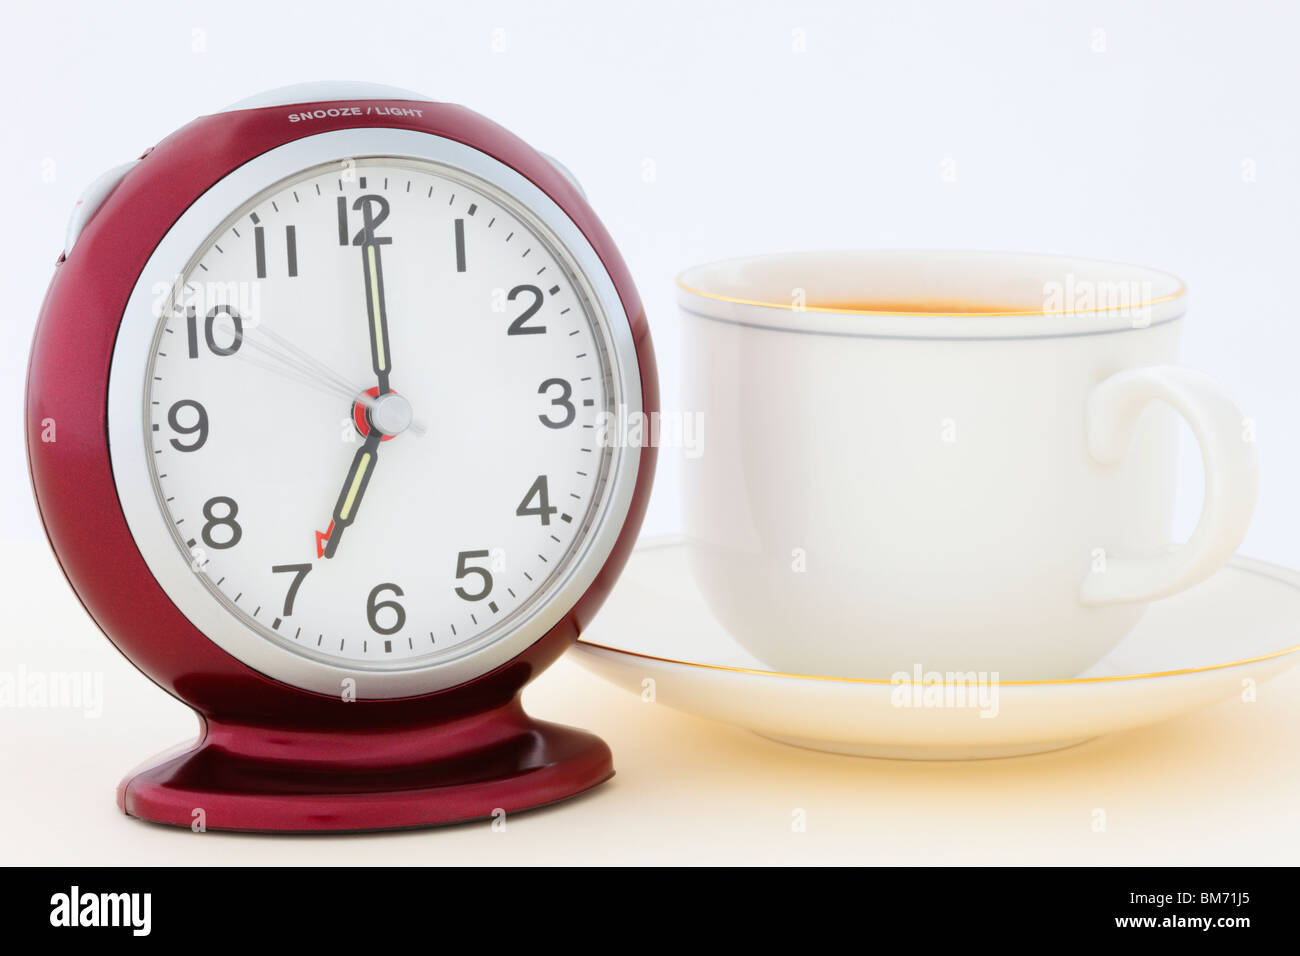 Kaffee Tasse und Untertasse mit einem roten Wecker um 7 Uhr in der Früh nur Sekunden, bevor der Wecker klingelt. Aufwachen und Kaffee im Bett Konzept. England Großbritannien Großbritannien Stockfoto